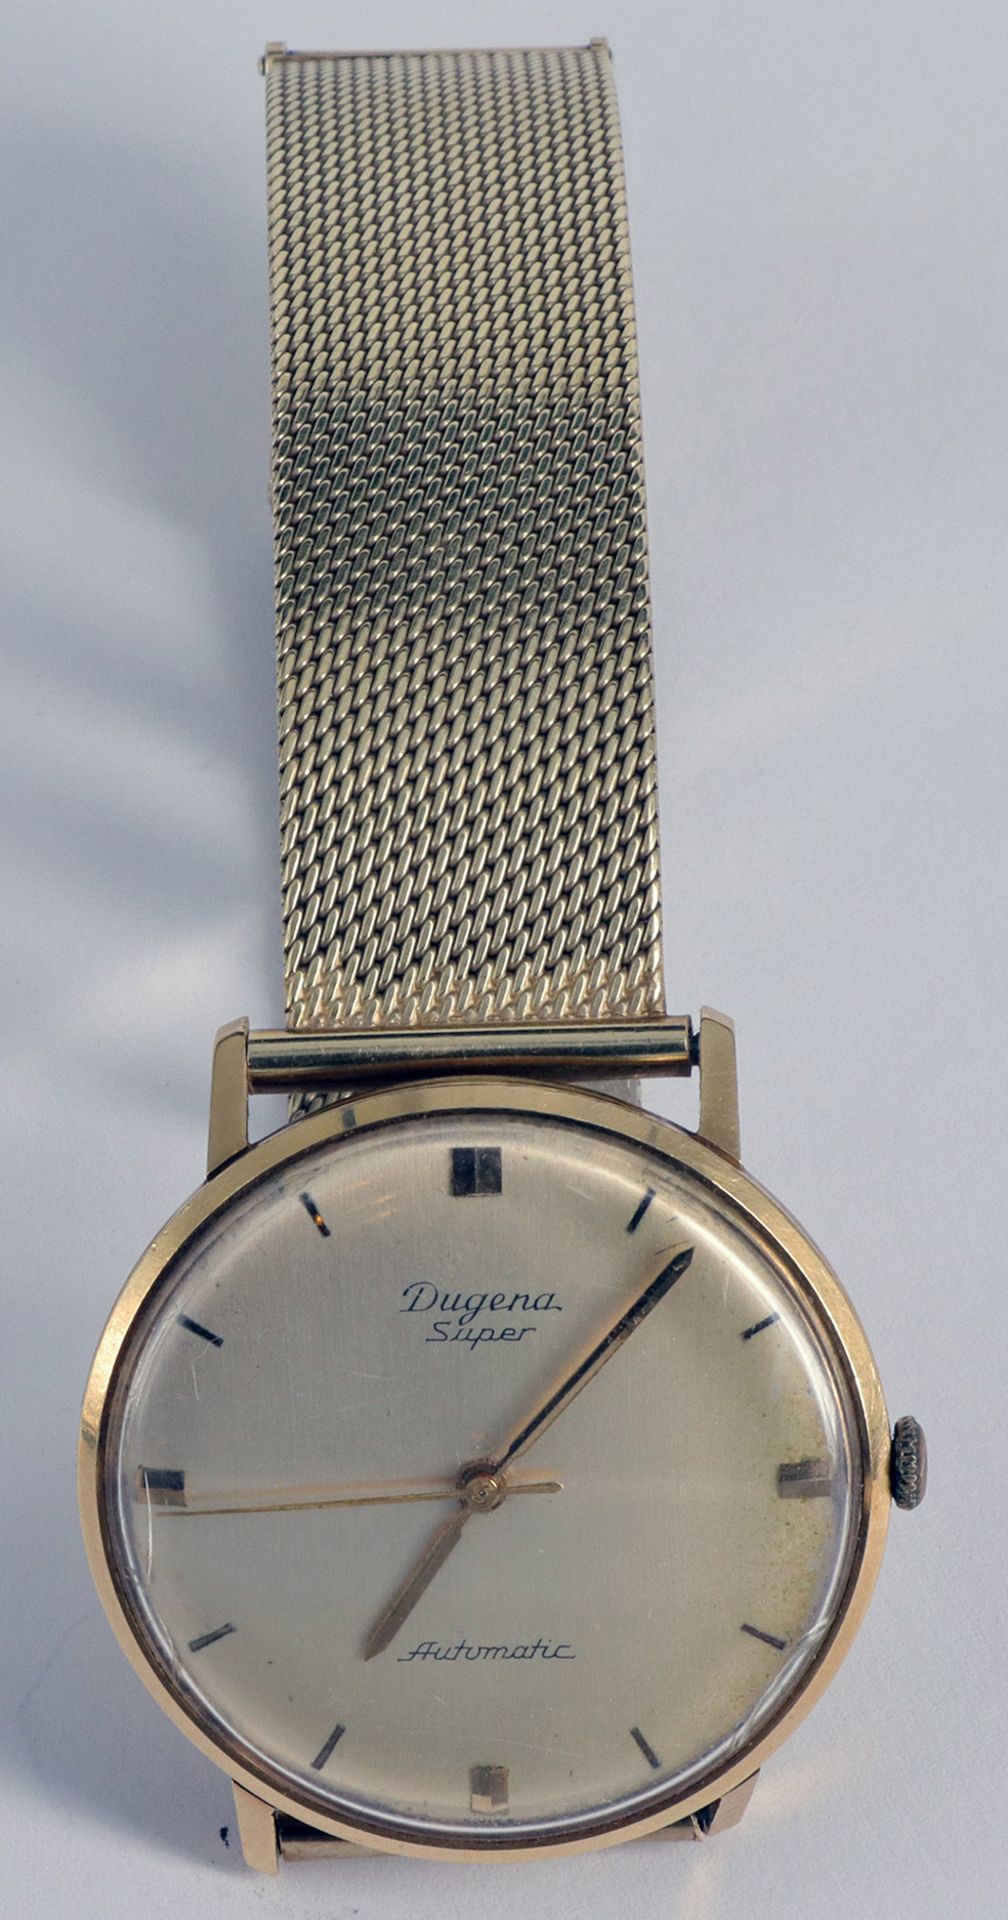 Konvolut Herrenarmbanduhren, davon eine in Gold/ collection of men's wrist watches, one in gold: - Image 3 of 4